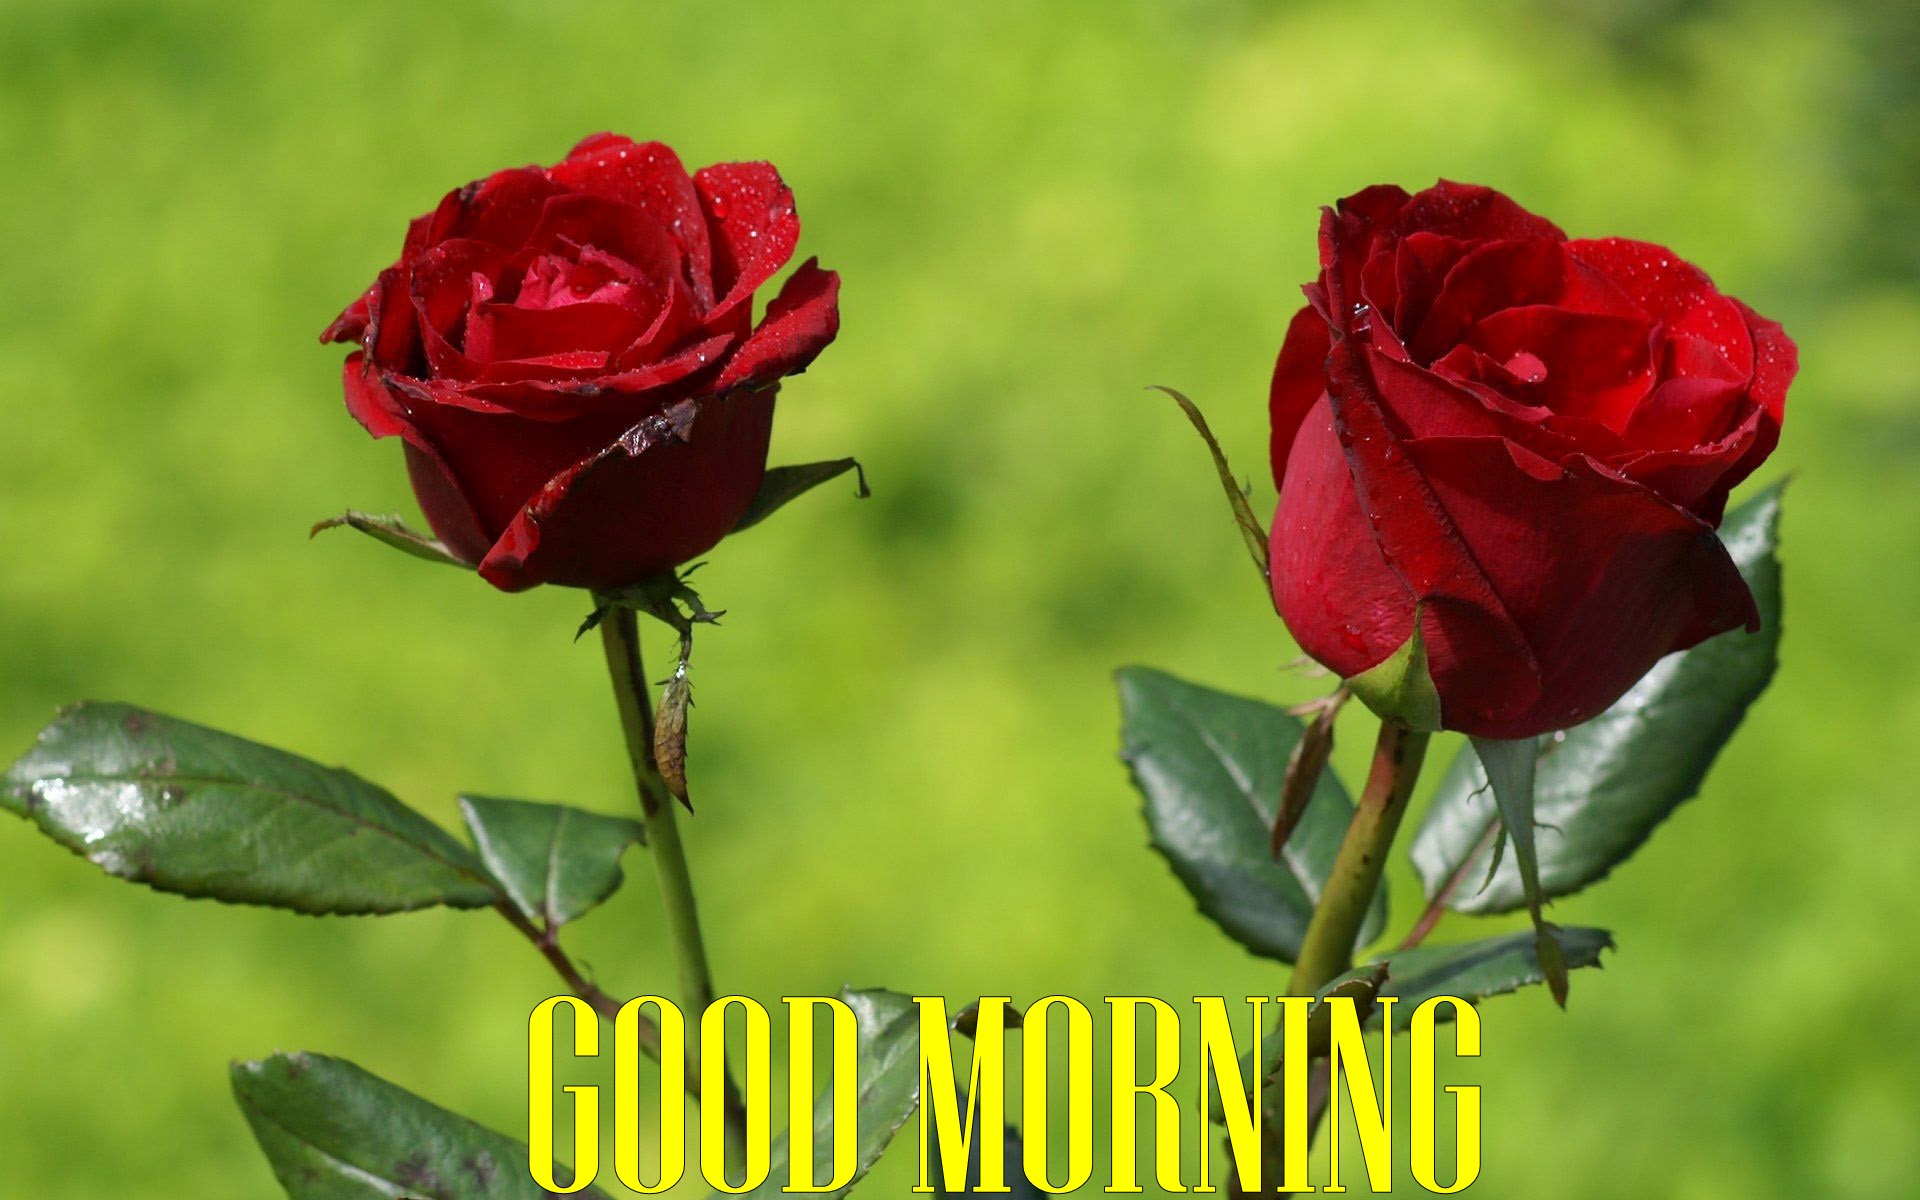 Good Morning Red Roses Hd Wallpapers - ليلة جمعة مباركة بالصلاة على محمد وال محمد , HD Wallpaper & Backgrounds